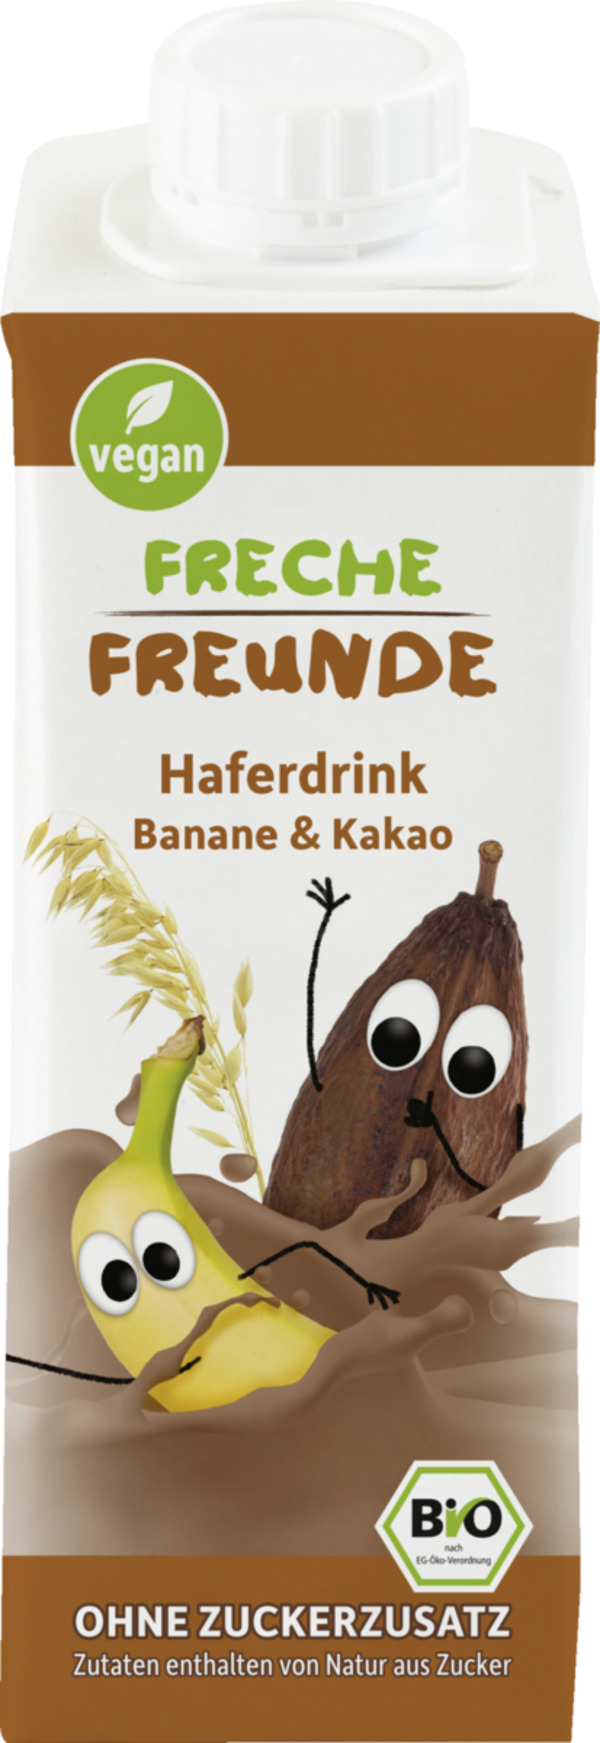 Bild 1 von Freche Freunde Bio Haferdrink Banane & Kakao